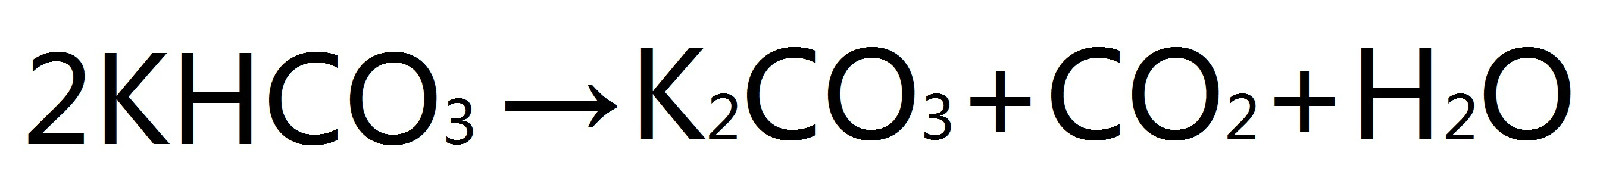 碳酸氫鉀在100℃至120℃之間分解